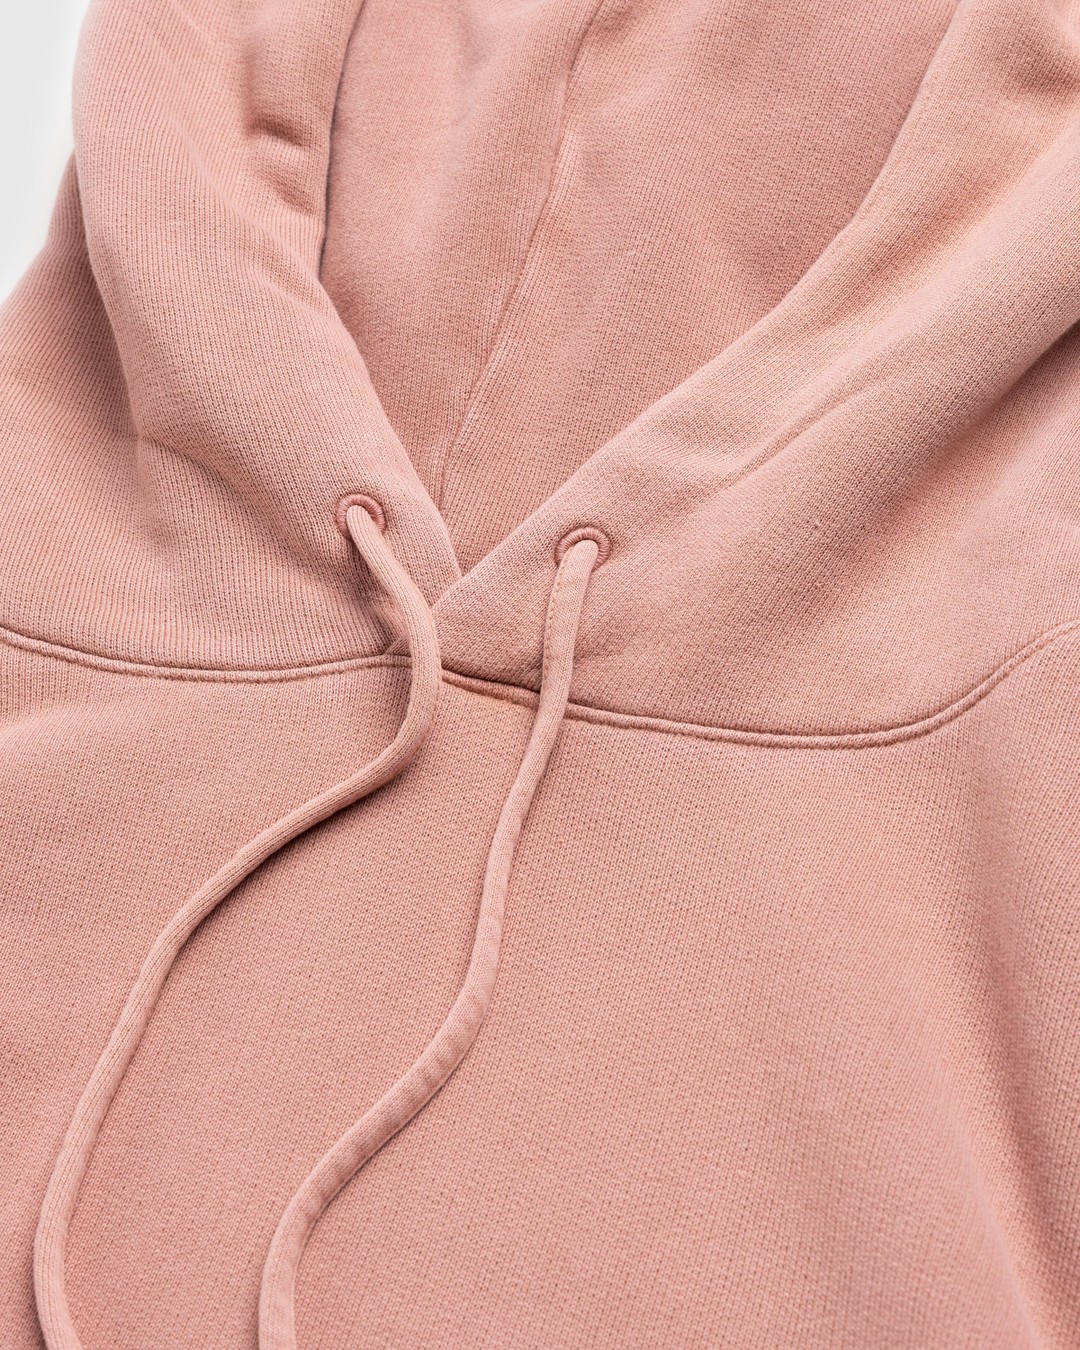 Acne Studios – Hooded Sweatshirt Vintage Pink - Hoodies - Pink - Image 6